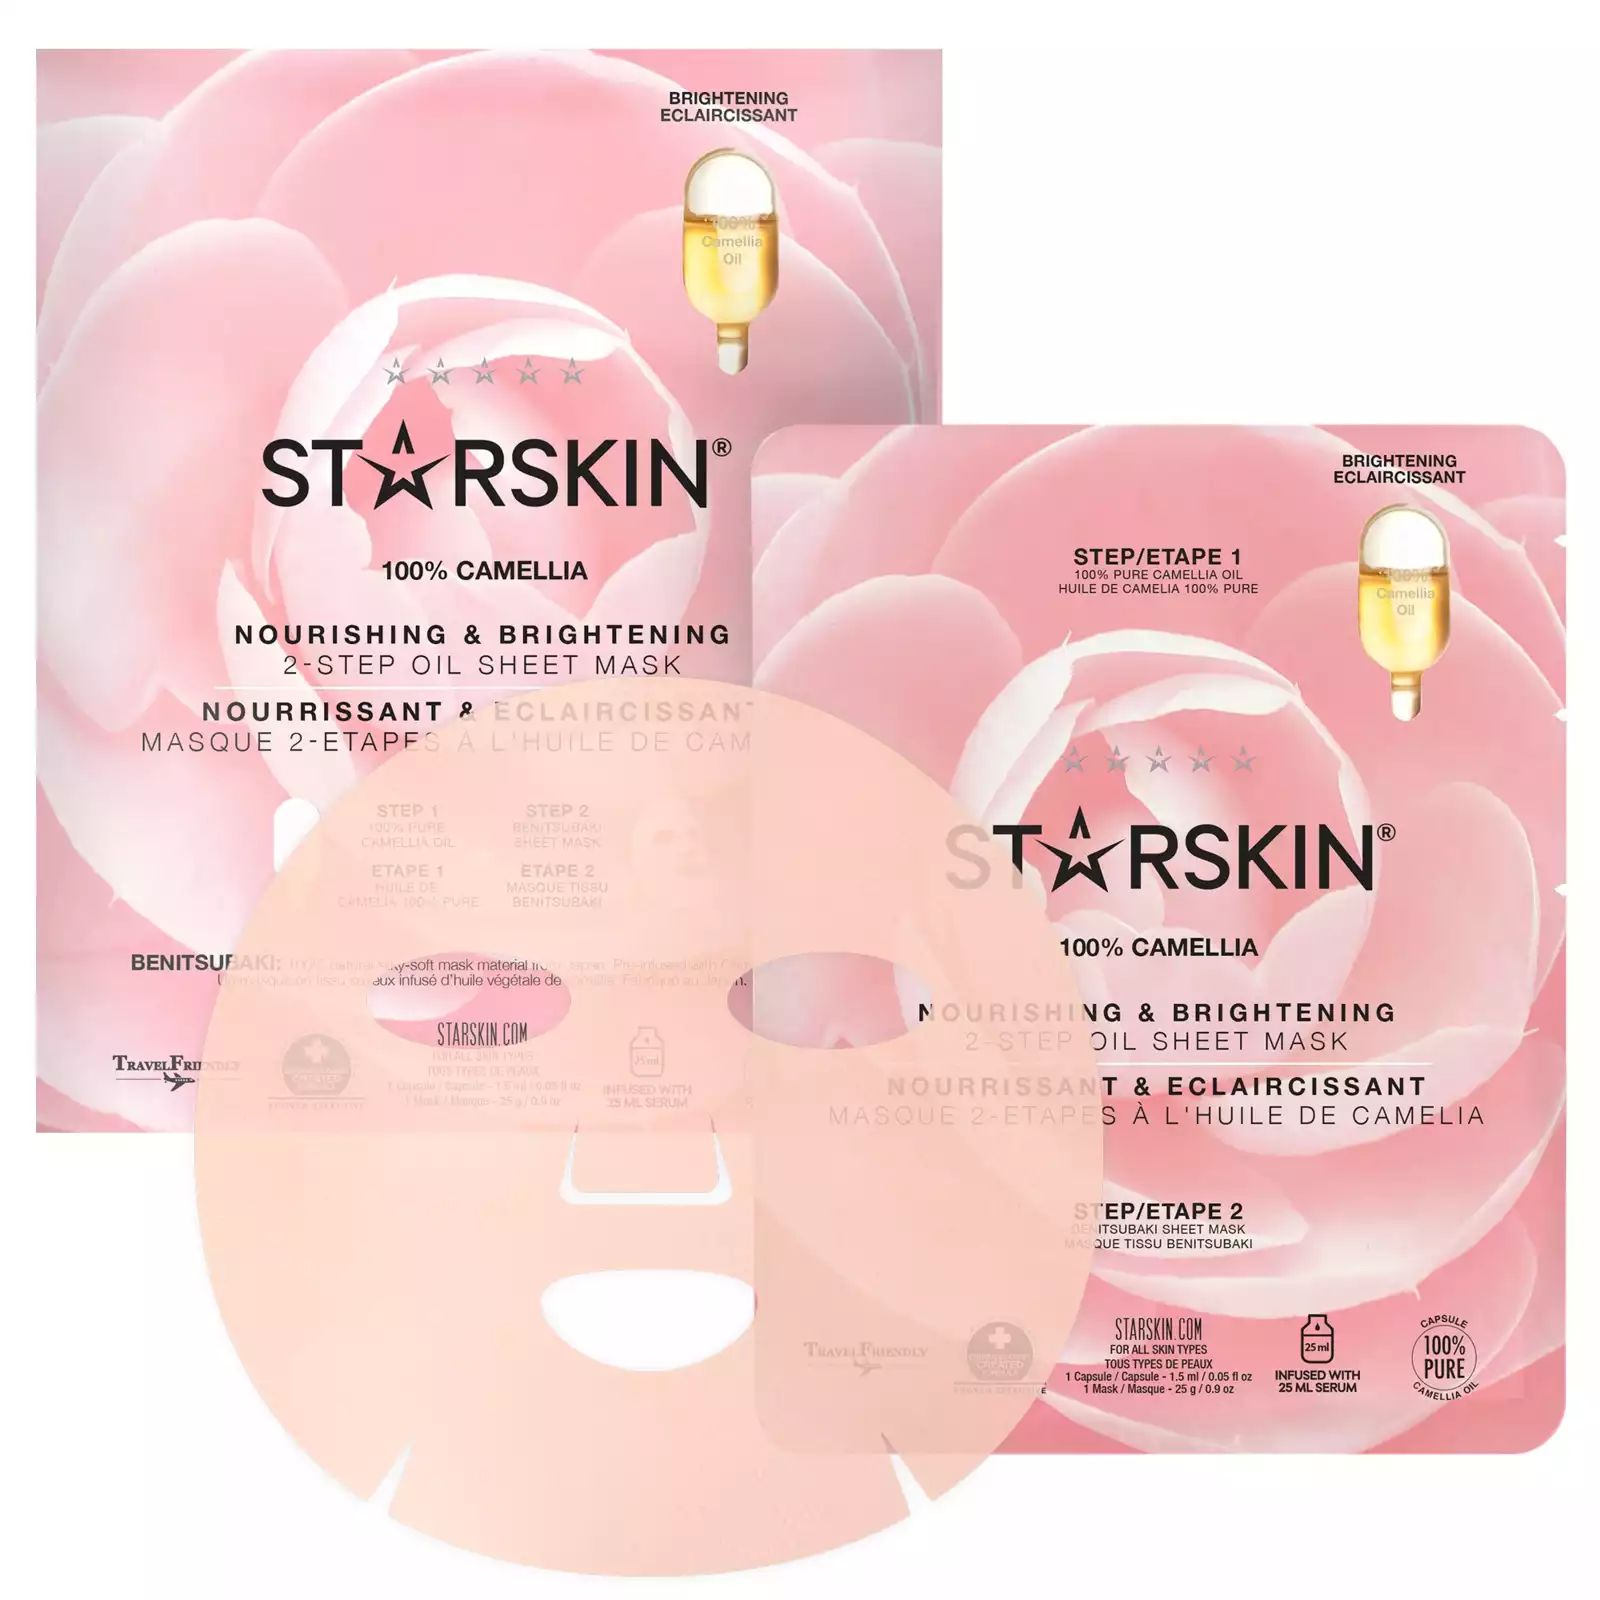 – 100% Camellia Oil (Brightening) Mask